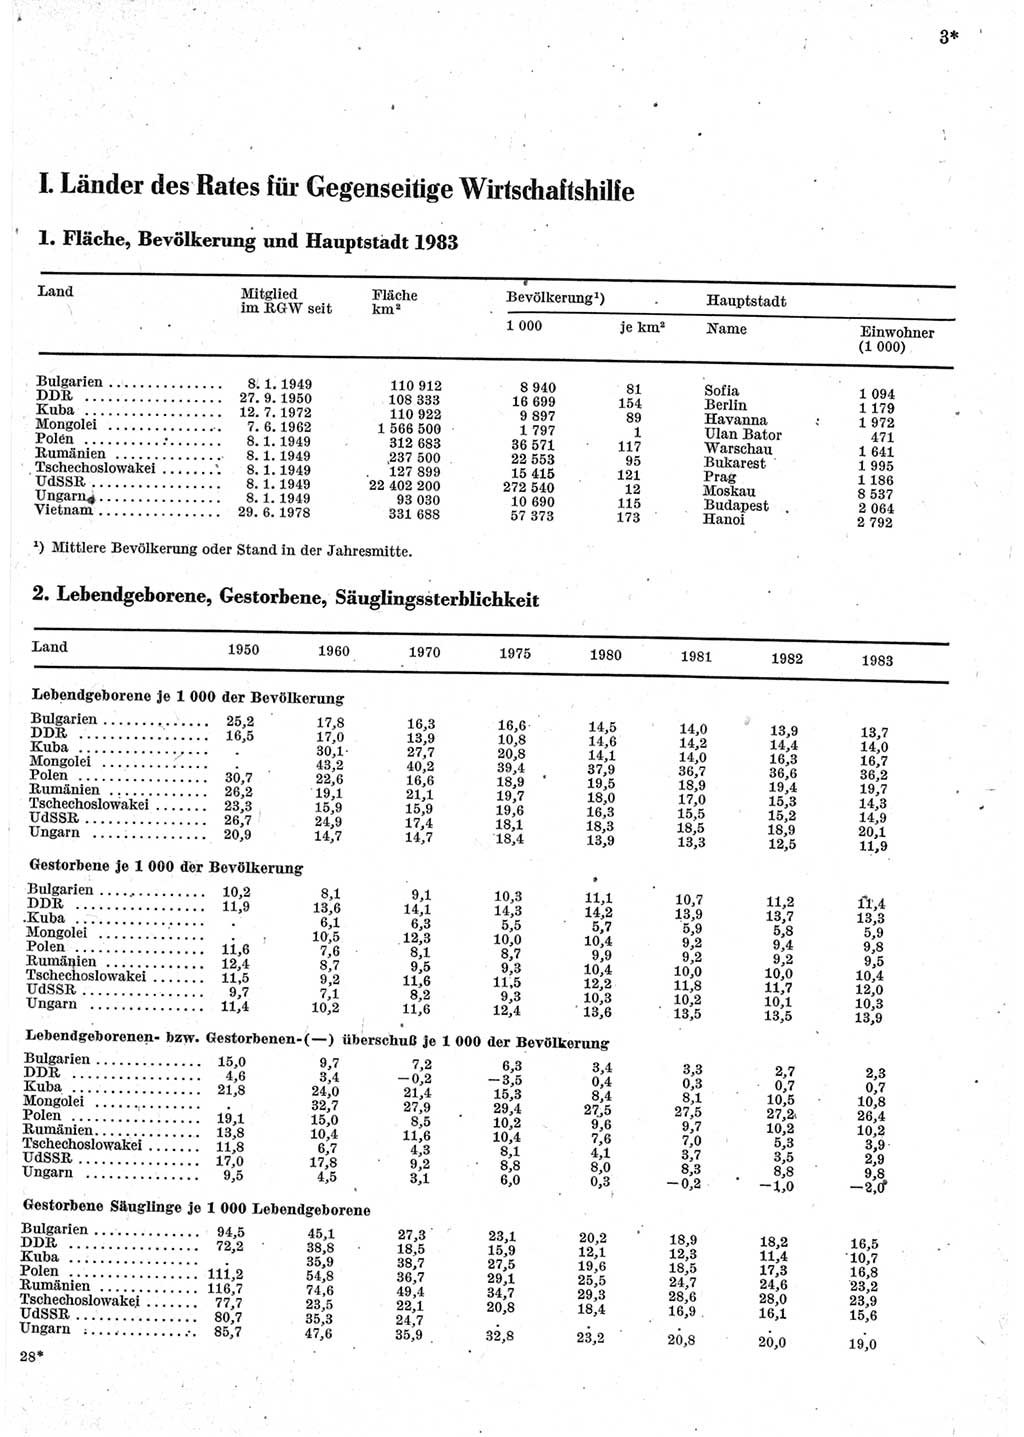 Statistisches Jahrbuch der Deutschen Demokratischen Republik (DDR) 1985, Seite 3 (Stat. Jb. DDR 1985, S. 3)